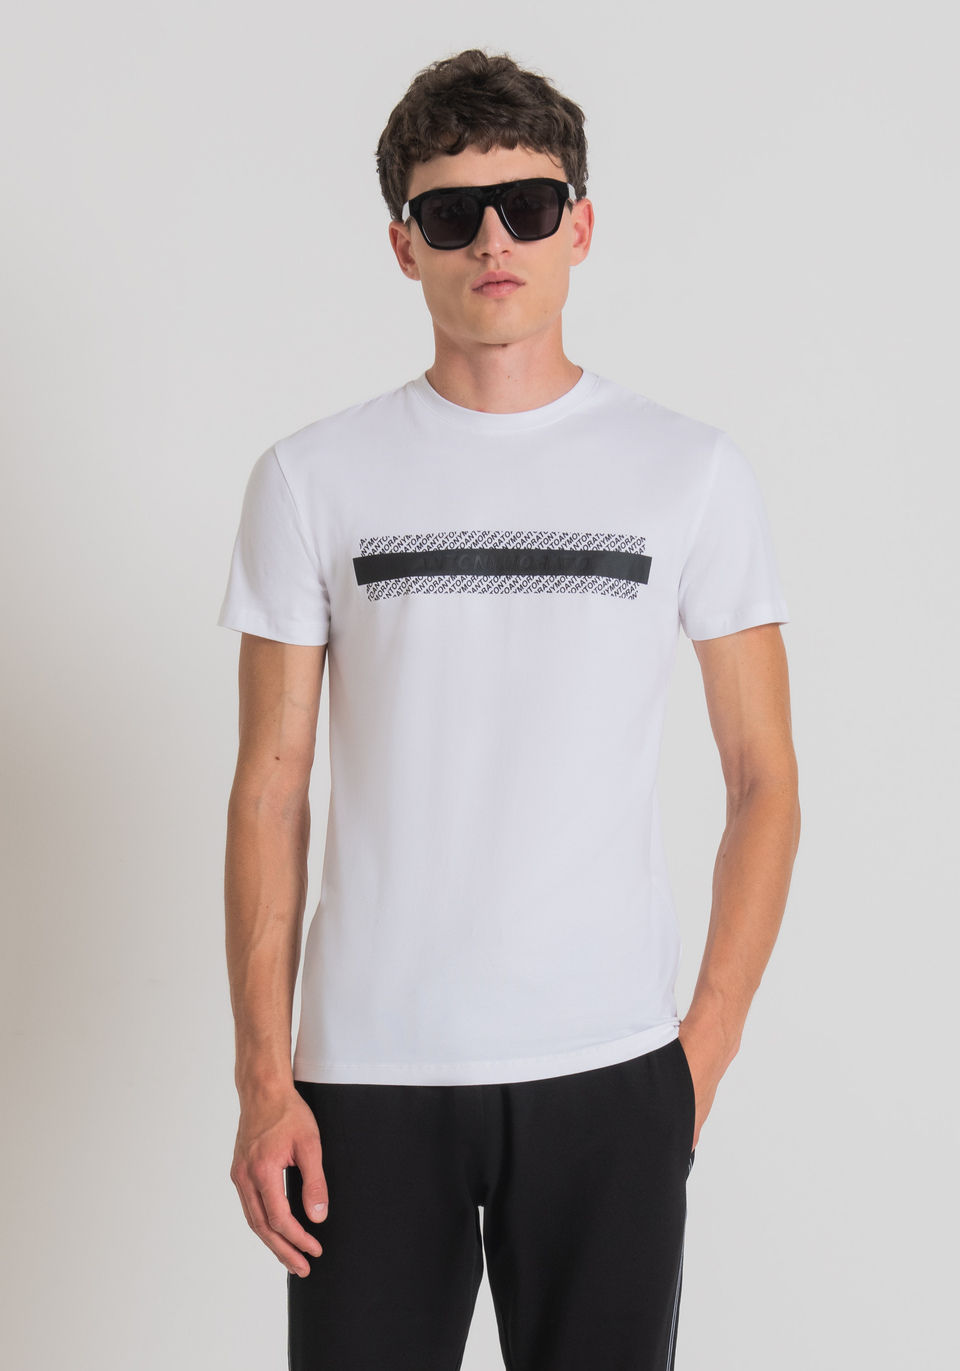 Camisetas Antony Morato ⋆ Polos de hombre, camisetas elegantes para trajes